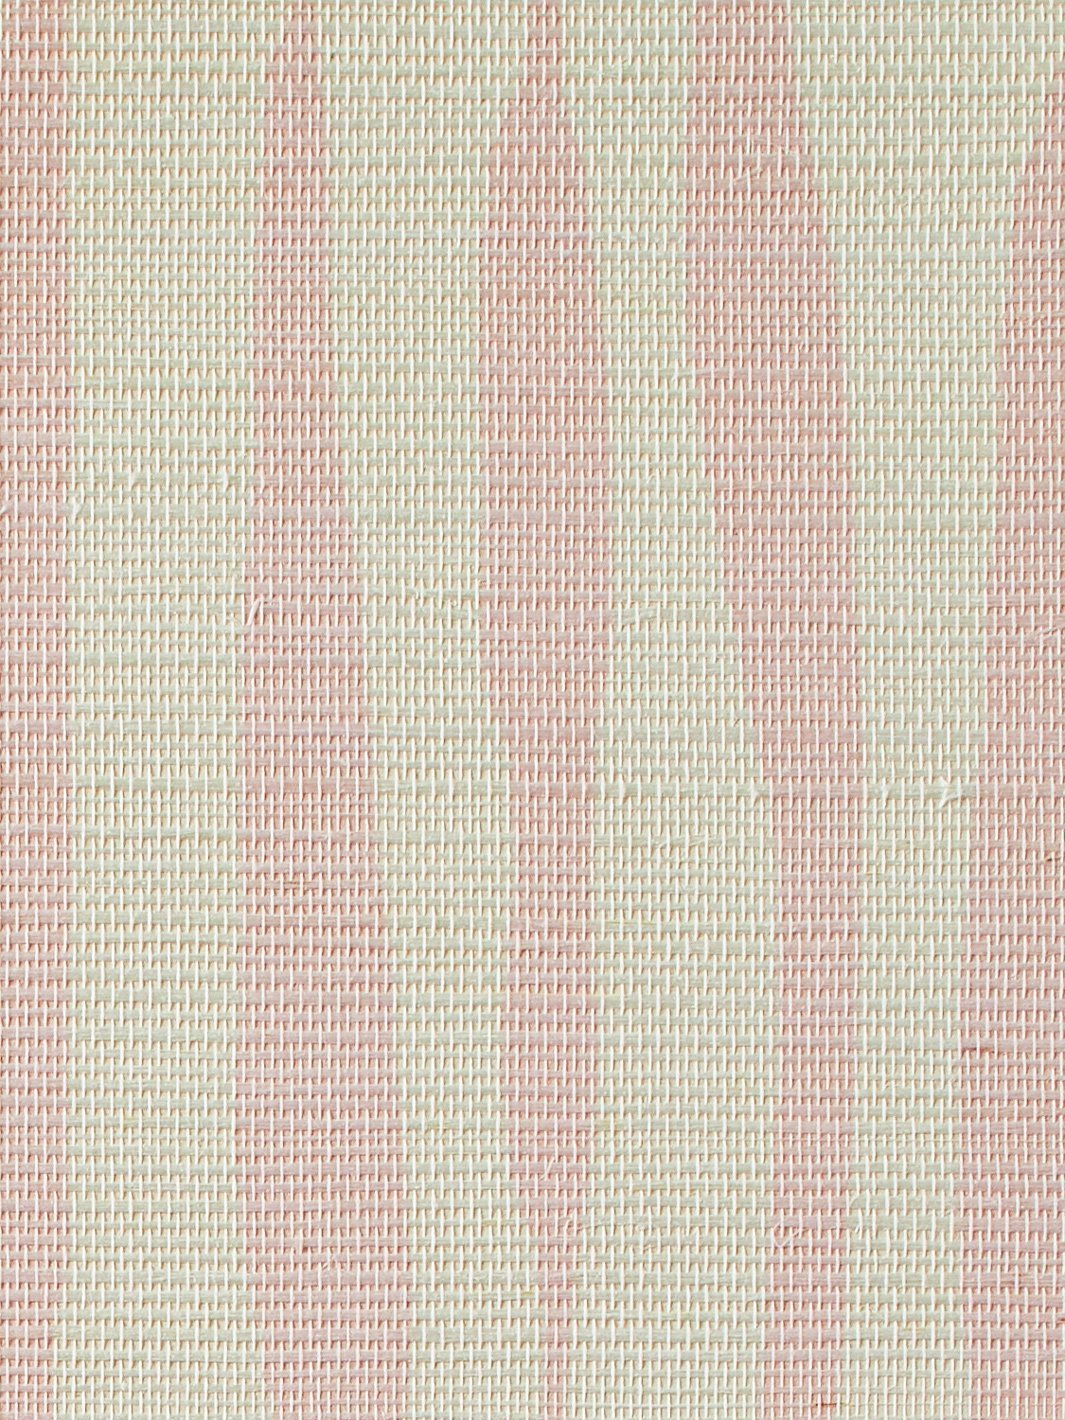 'Watercolor Weave Small' Grasscloth' Wallpaper by Wallshoppe - Ballet Slipper